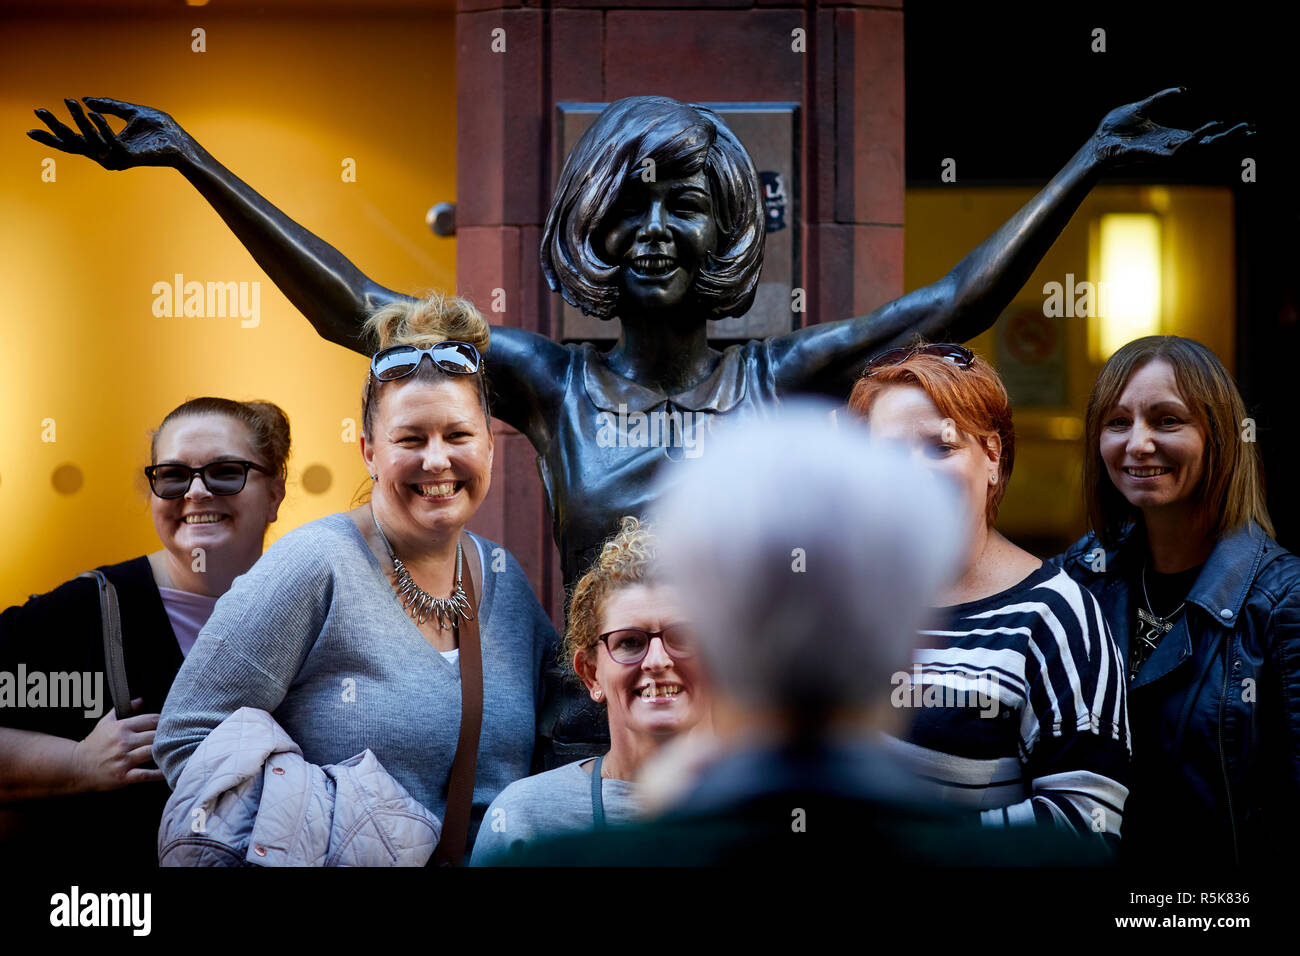 Le centre-ville de Liverpool Mathews Street Cilla Black statue en bronze d'un site touristique près de la caverne Banque D'Images